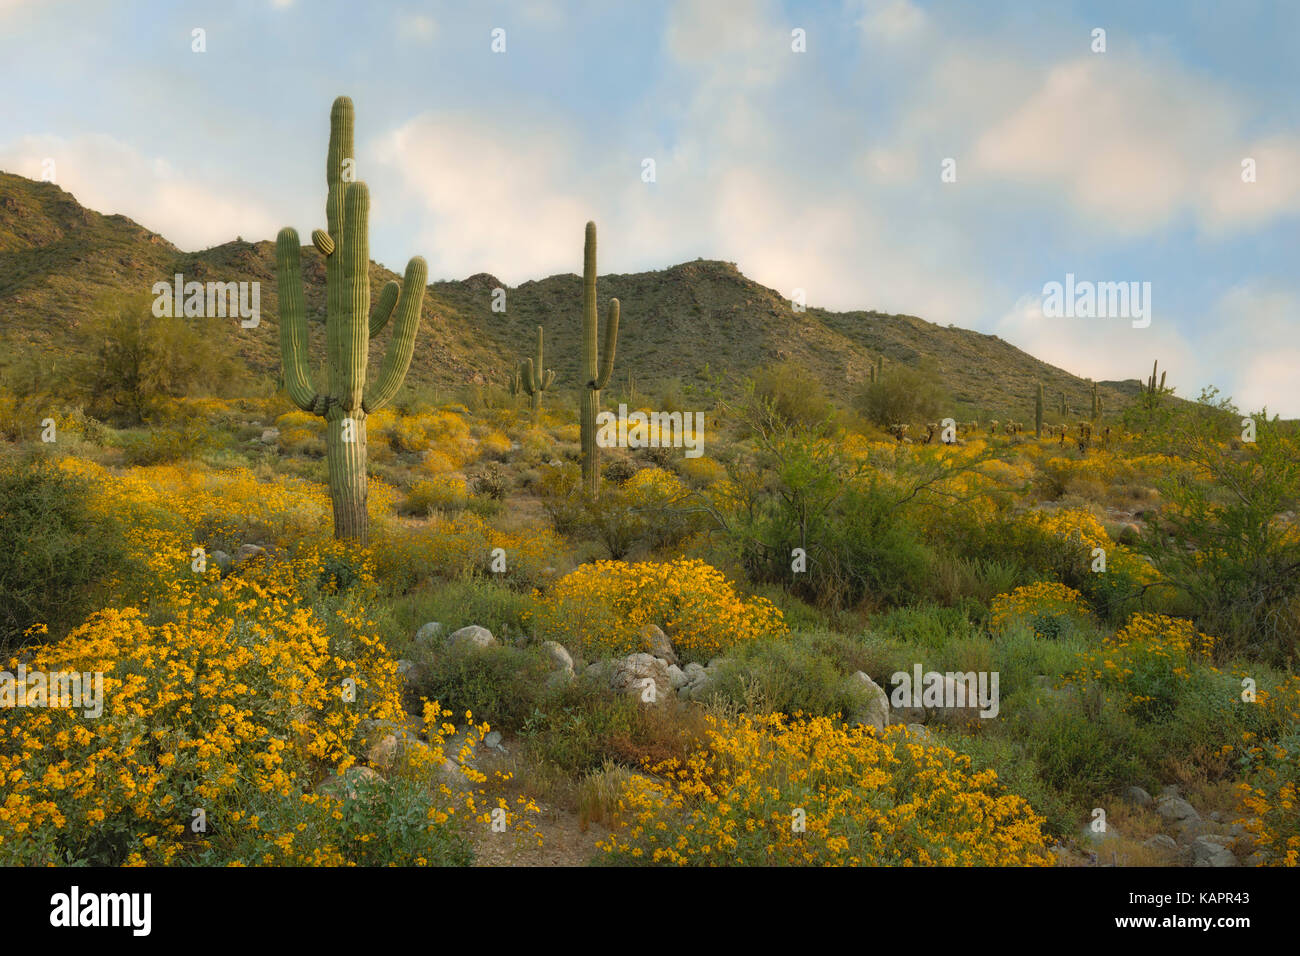 La mattina presto in Arizona Vasca bianca montagna Parco regionale con la molla della fioritura della boccola fragile tra le torreggianti cactus Saguaro. Foto Stock